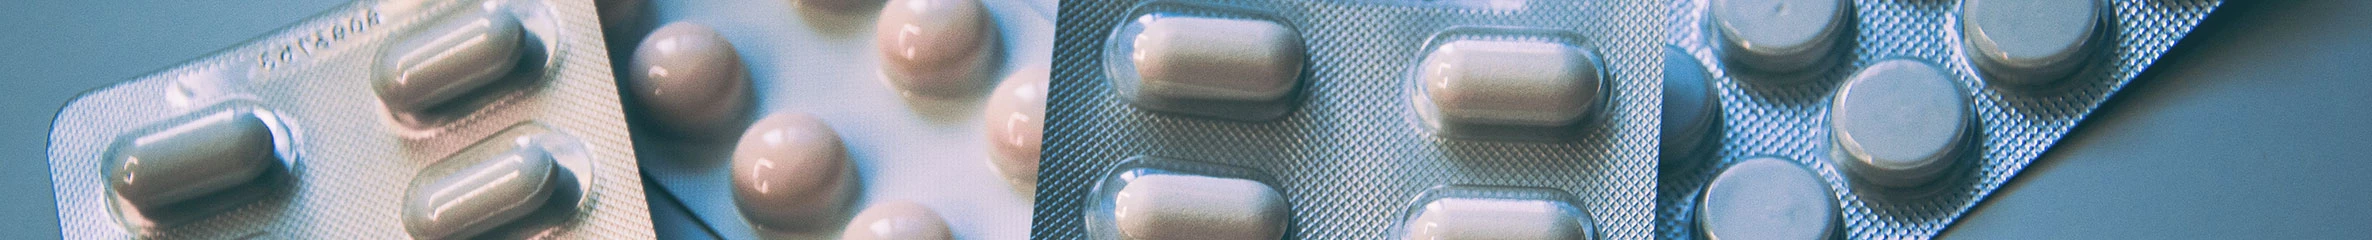 Vier Tablettenstreifen liegen verteilt auf einer Oberfläche.